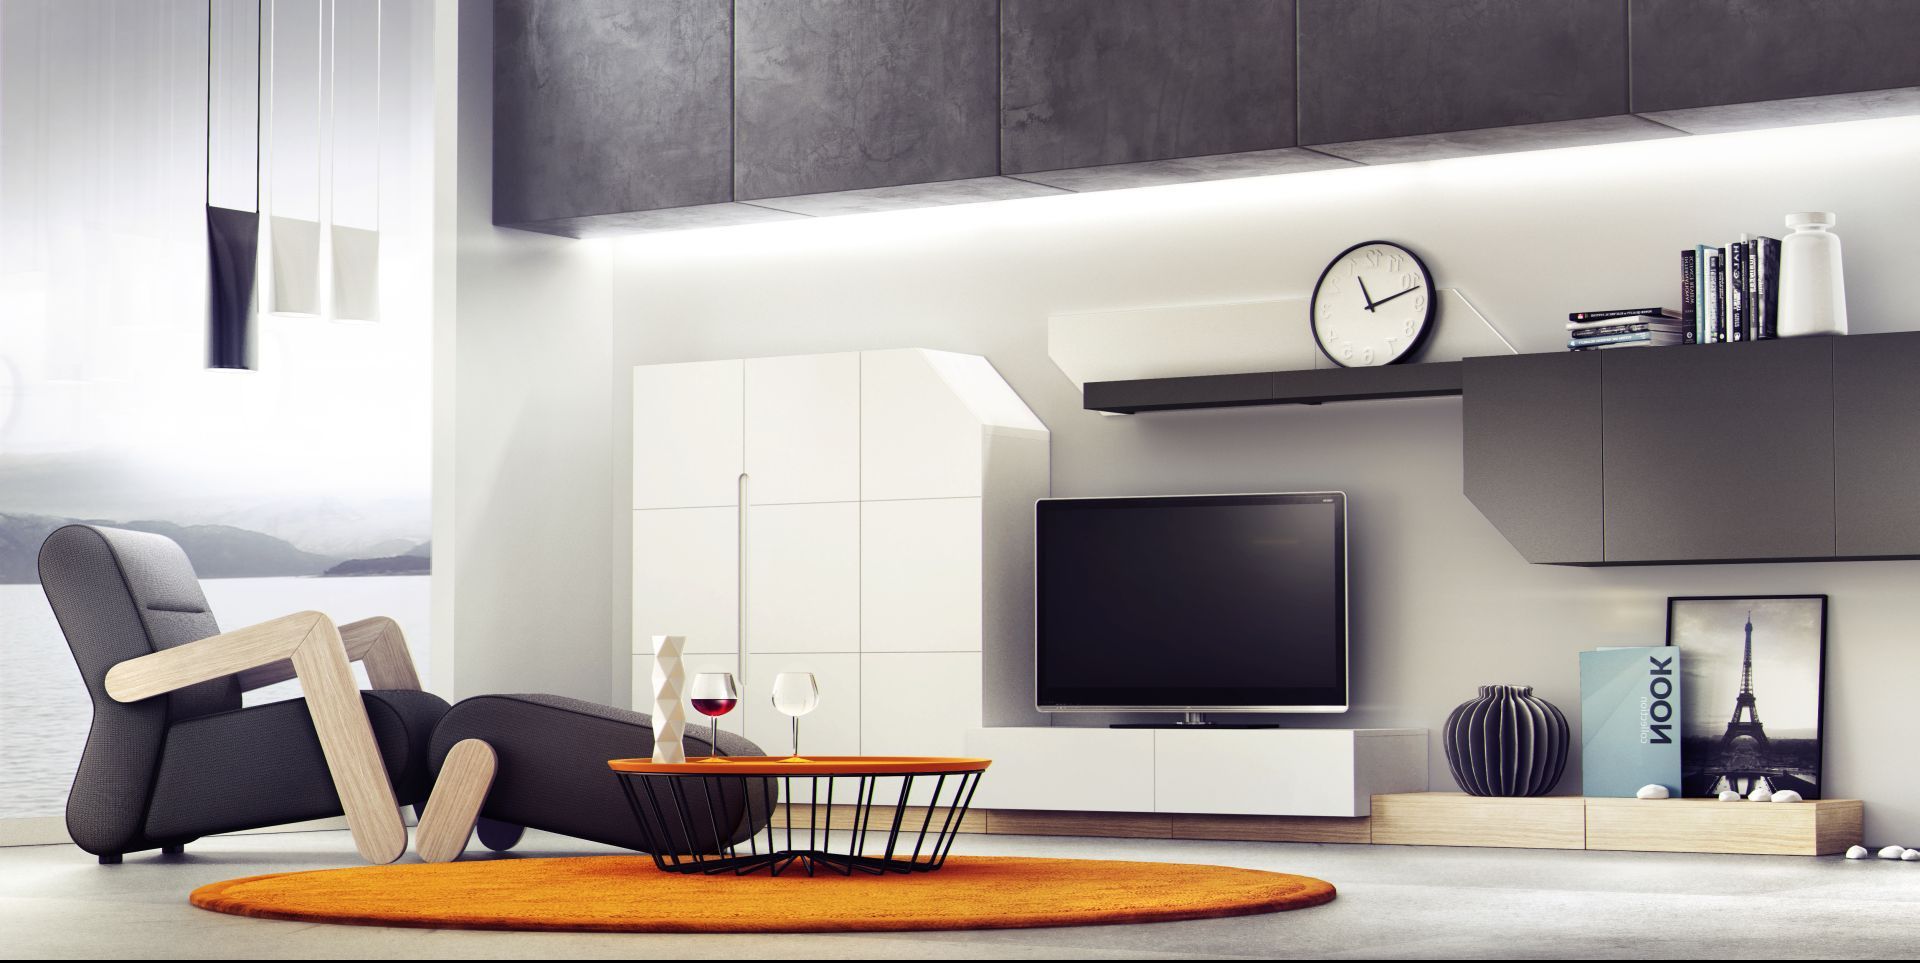 Fotele Base występują w dwóch odmianach – wysokiej i niskiej (typu lounge). Wersja lounge może być także wyposażona w charakterystyczny zagłówek, z tzw. uszami. Fot. Redo Design Studio